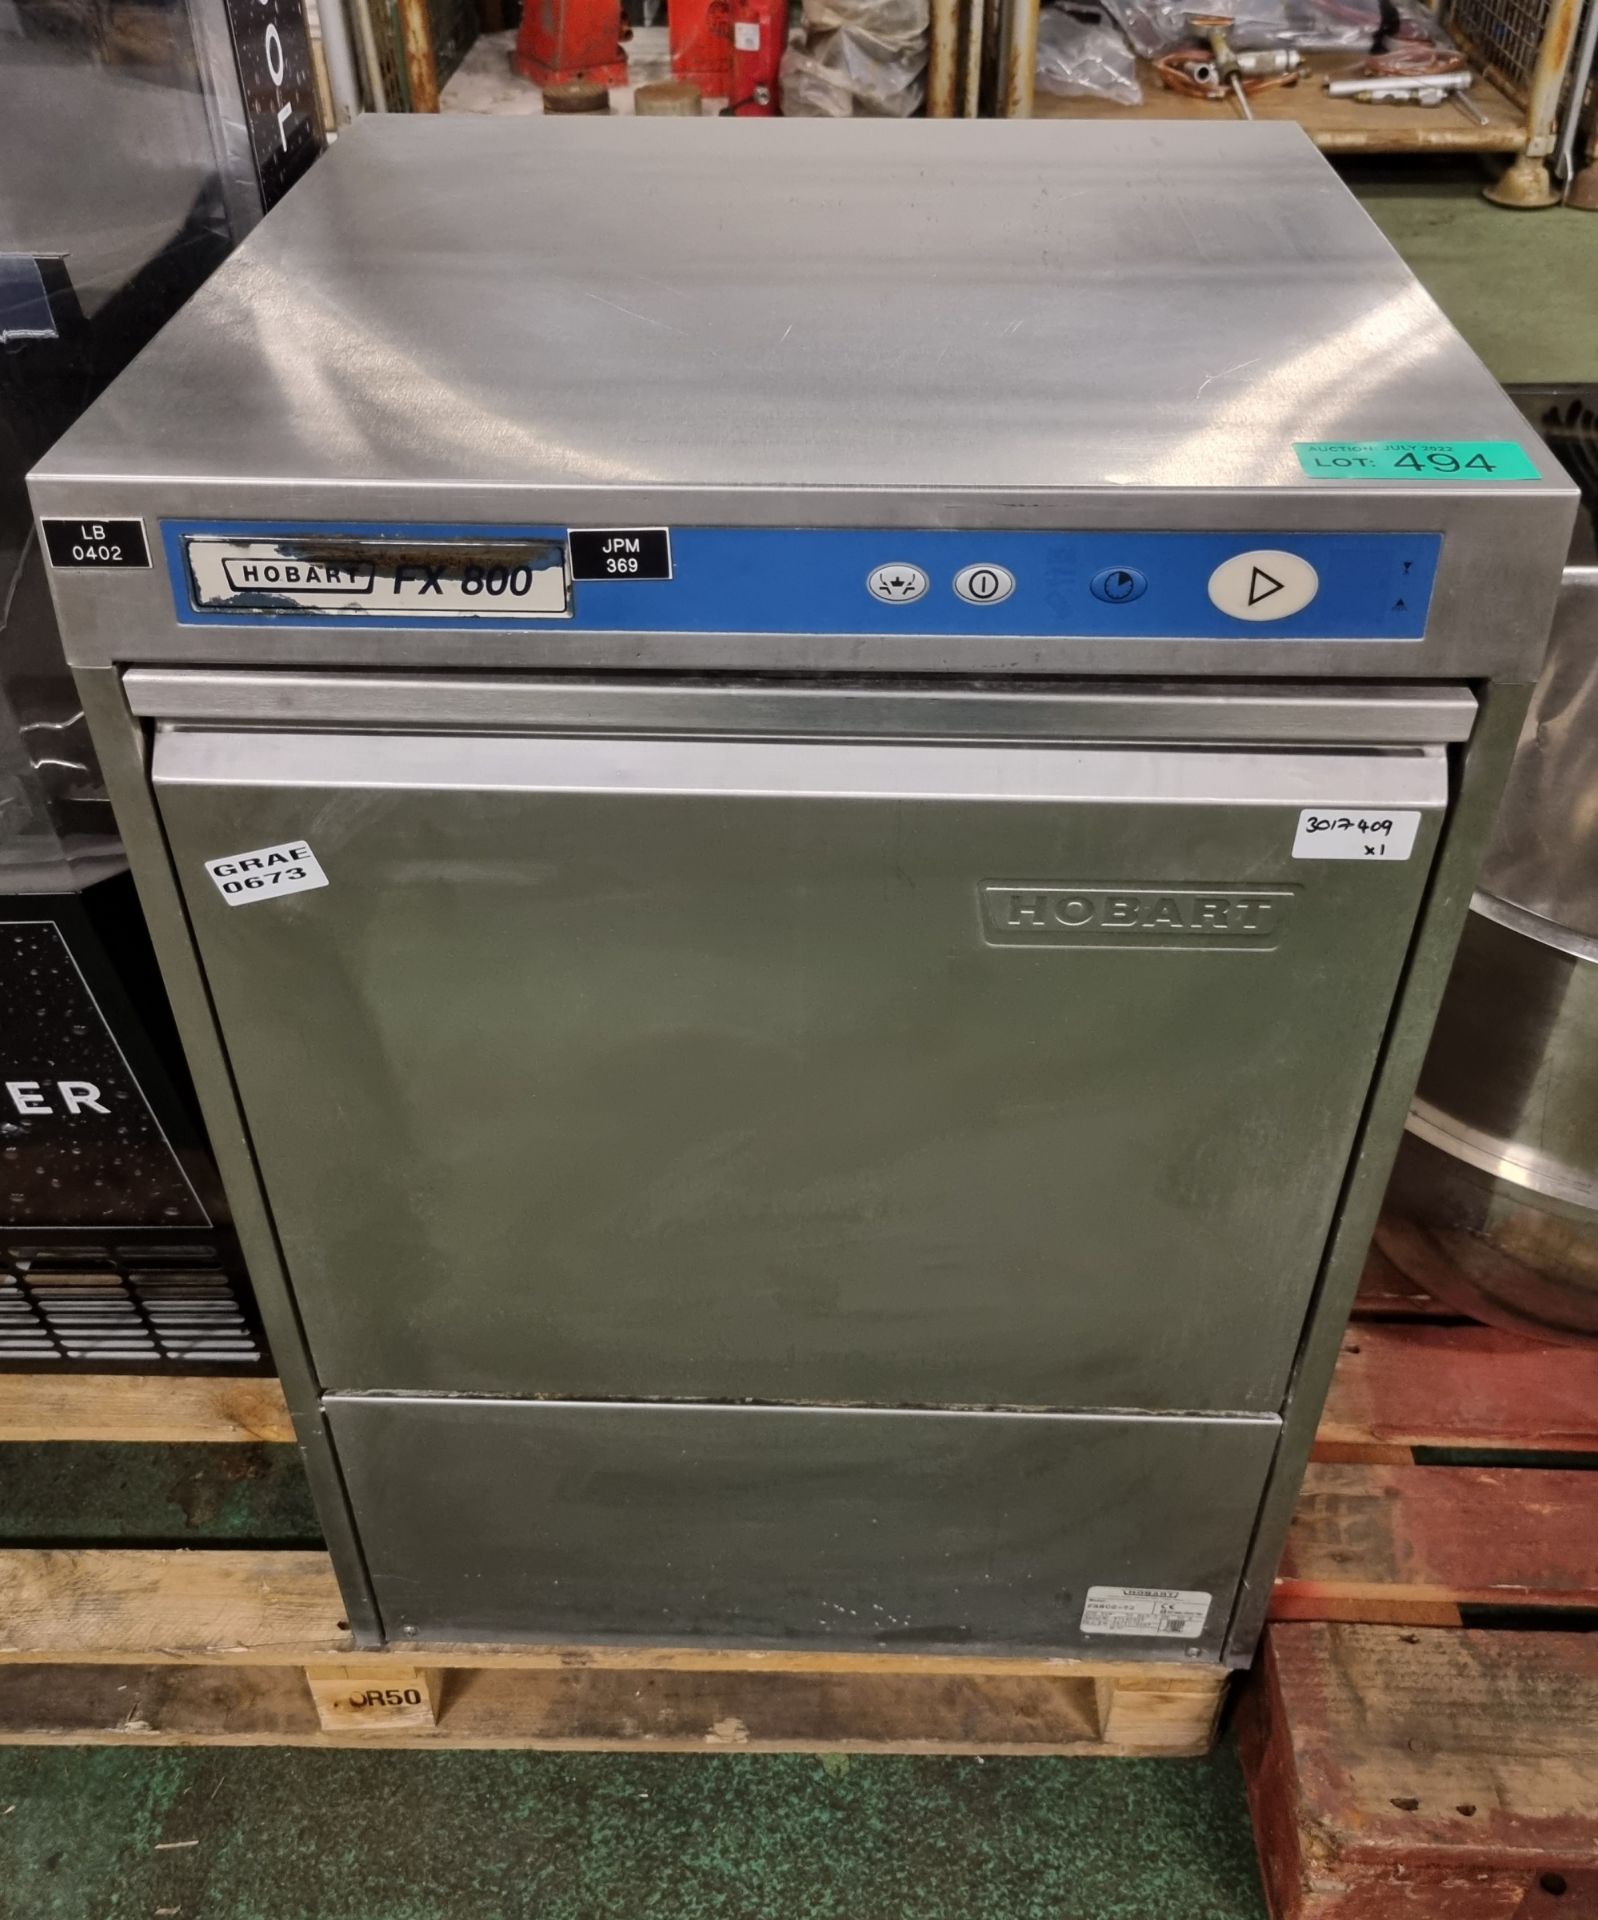 Hobart FX800 under-counter dishwasher 60x60x75